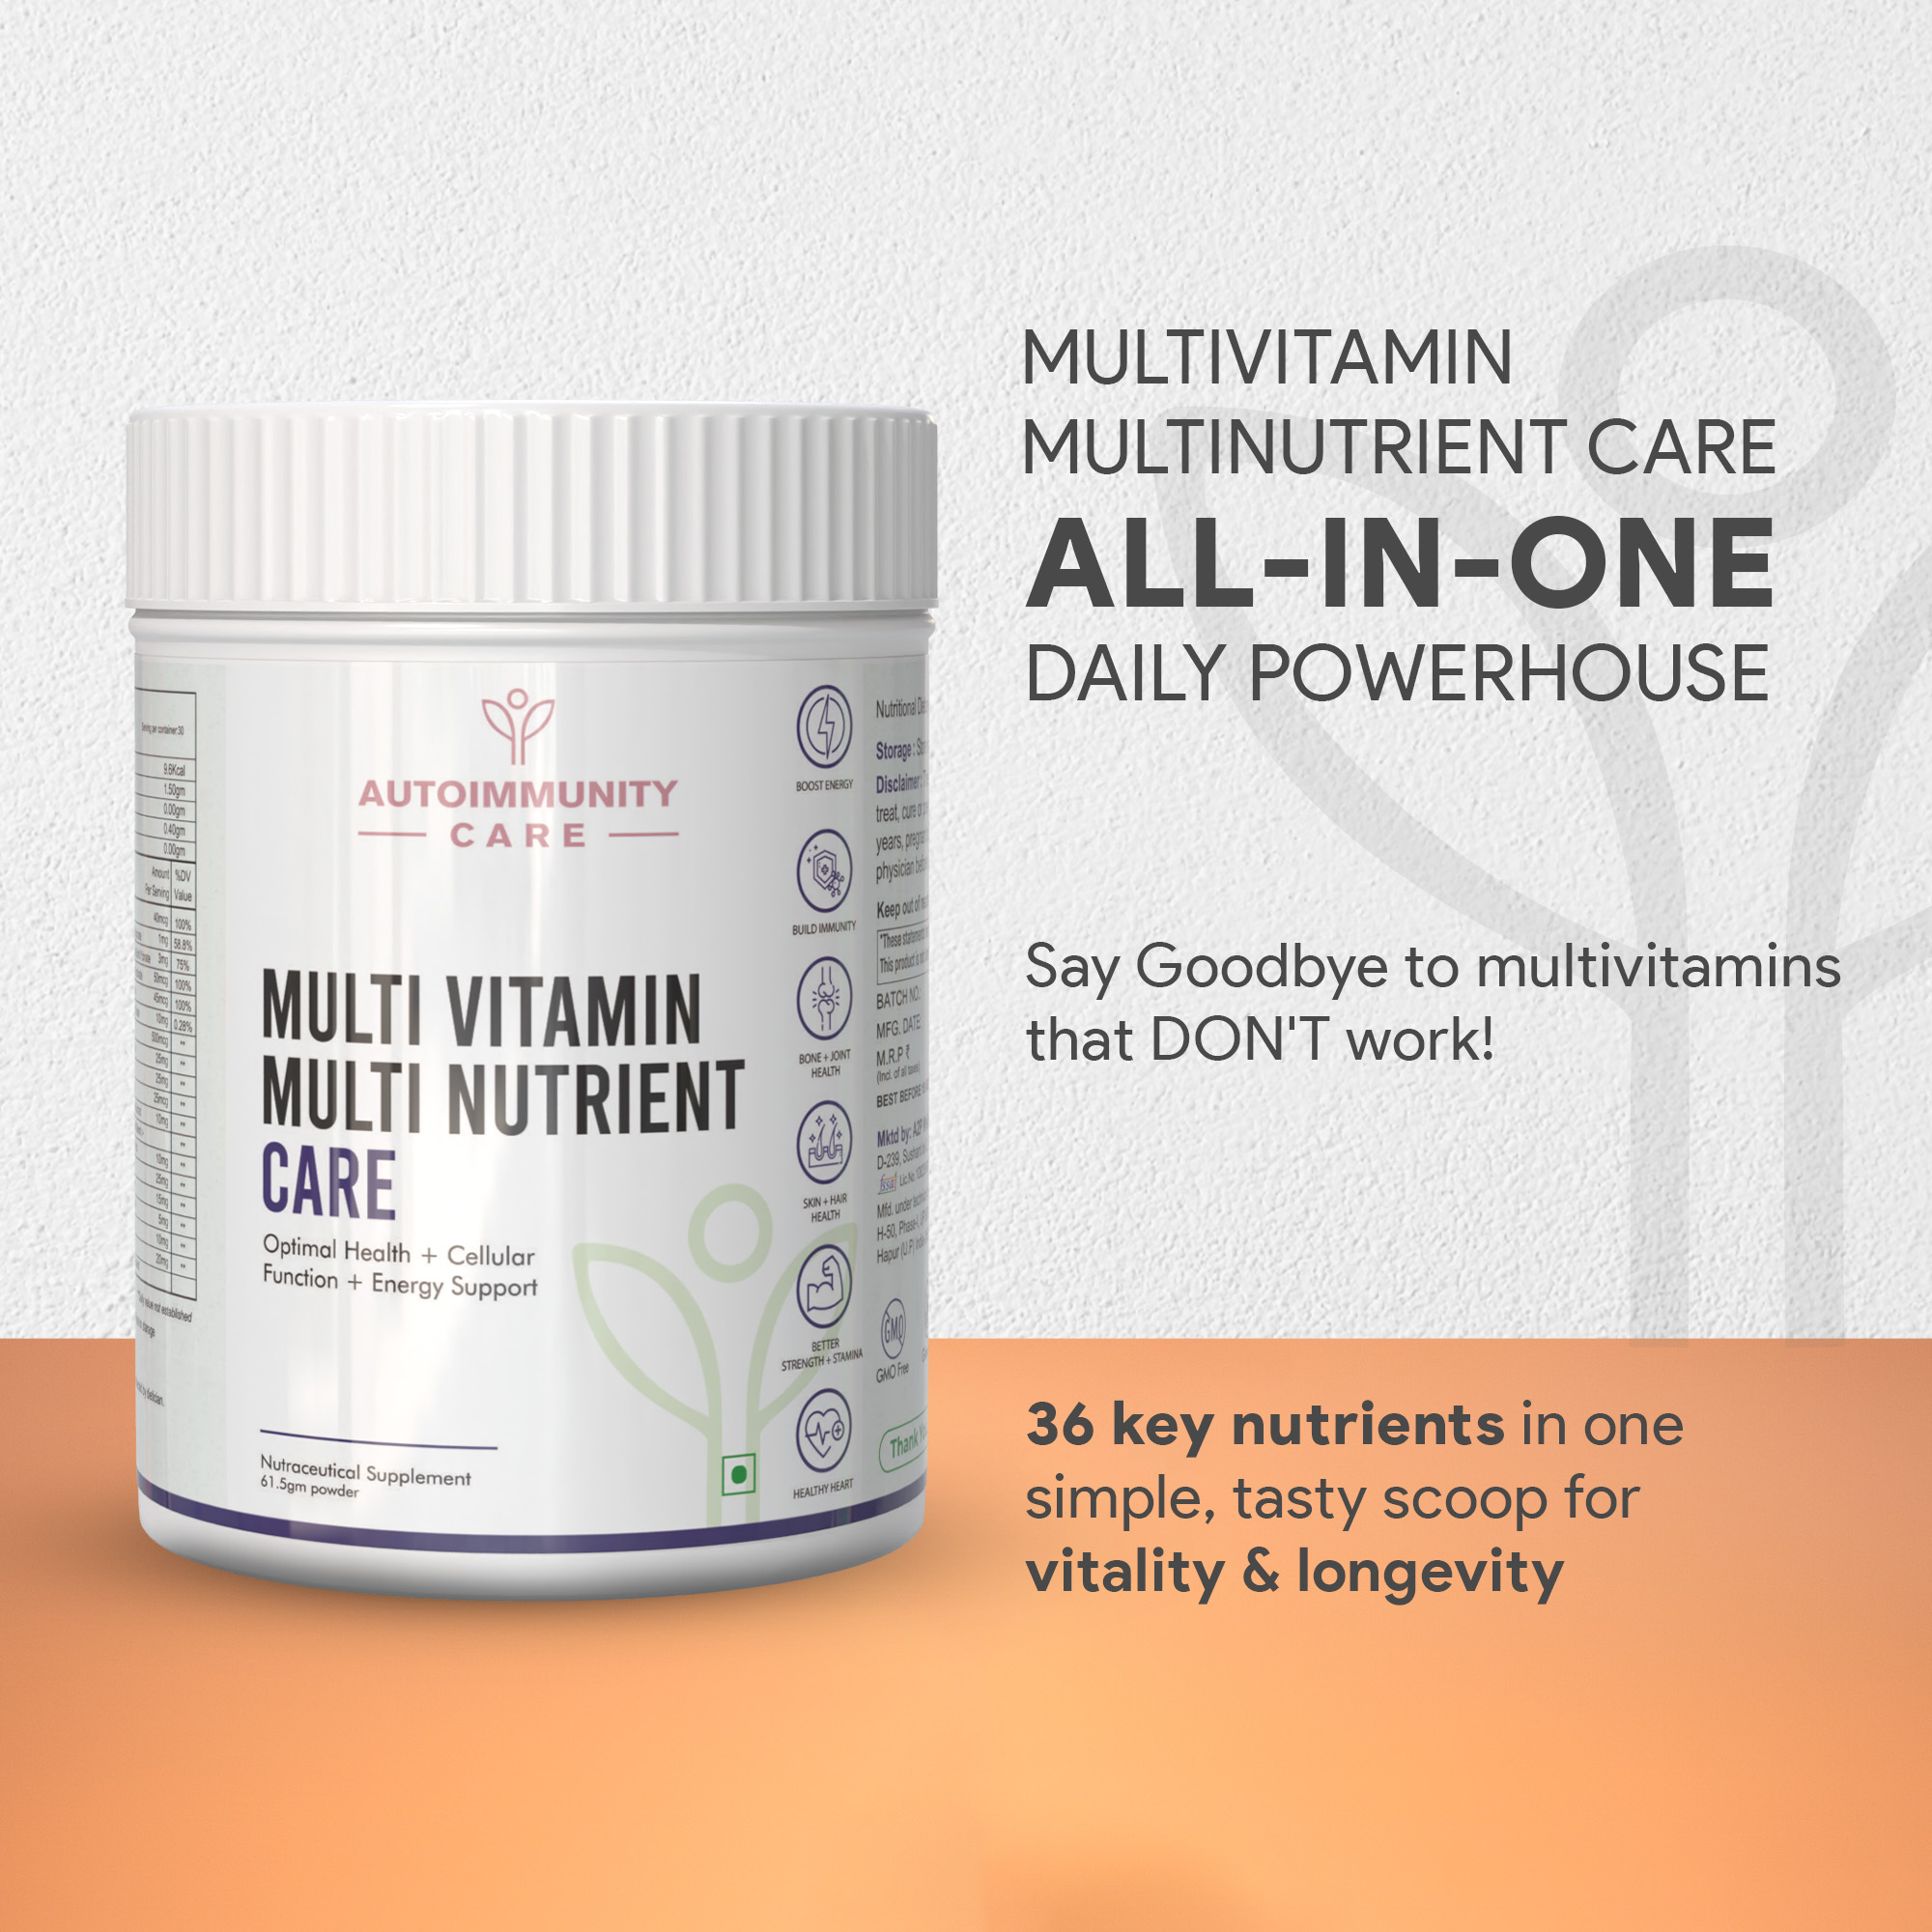 Autoimmunity Care Multi Vitamin Multi Nutrient Care